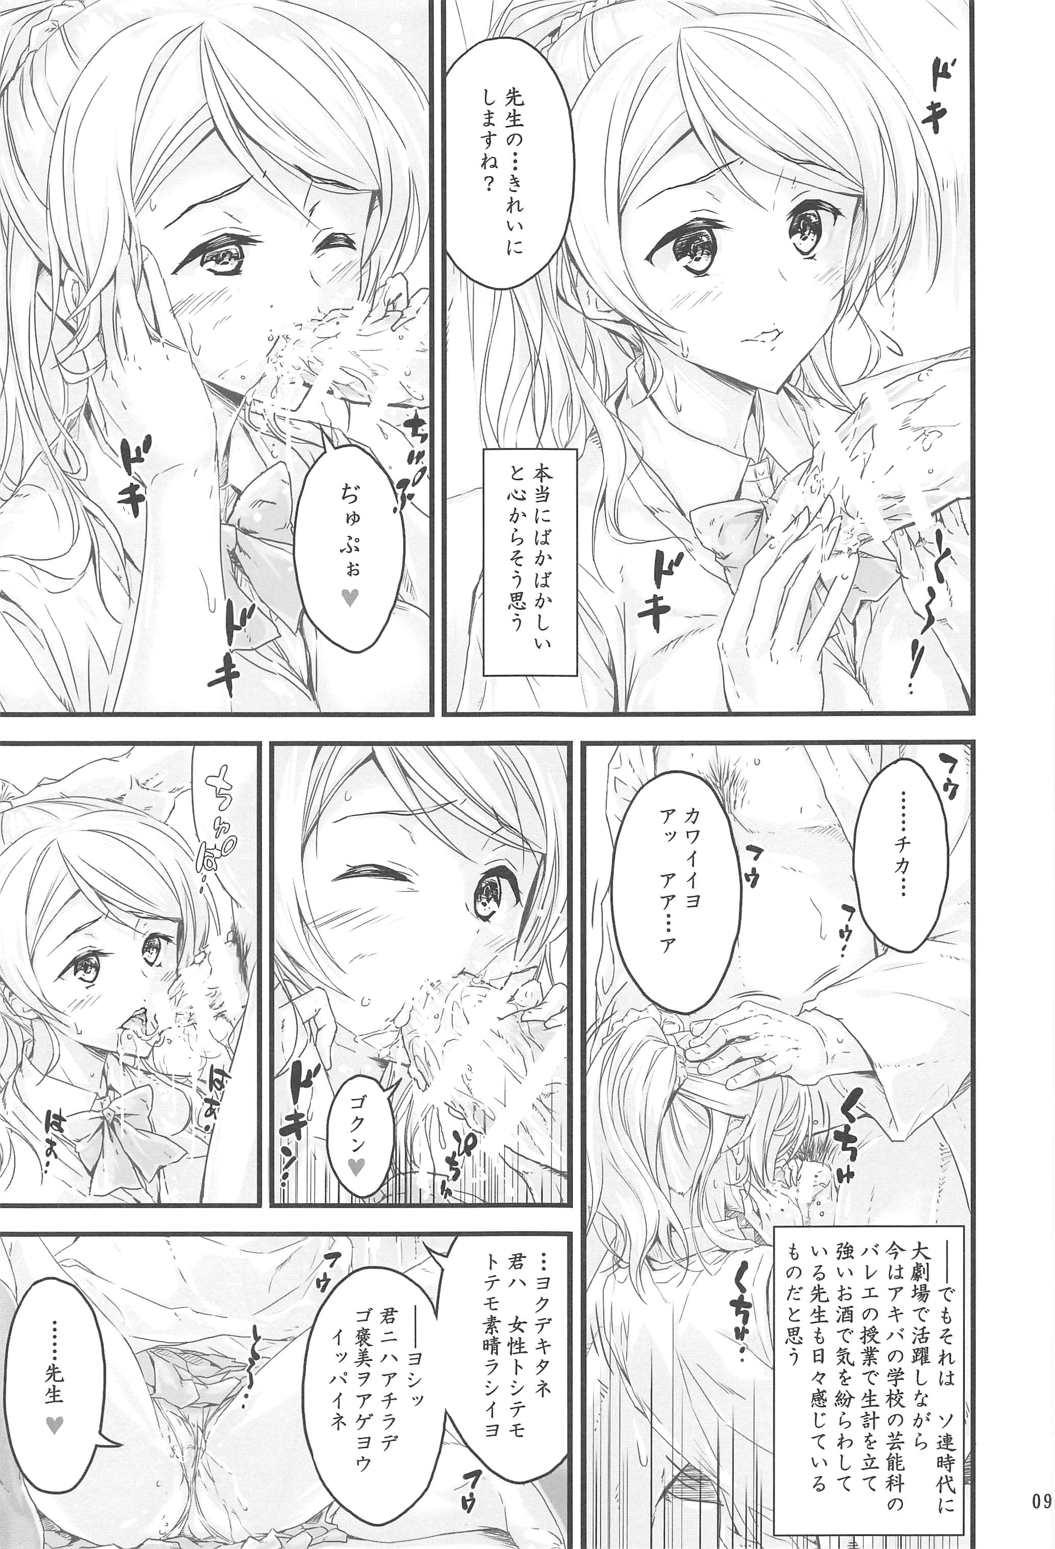 Milk Kouhensachi no Yuutousei de Jiki Seito Kaichou Saiyuuryoku Kouho no Ninen Erichika - Love live Kissing - Page 7